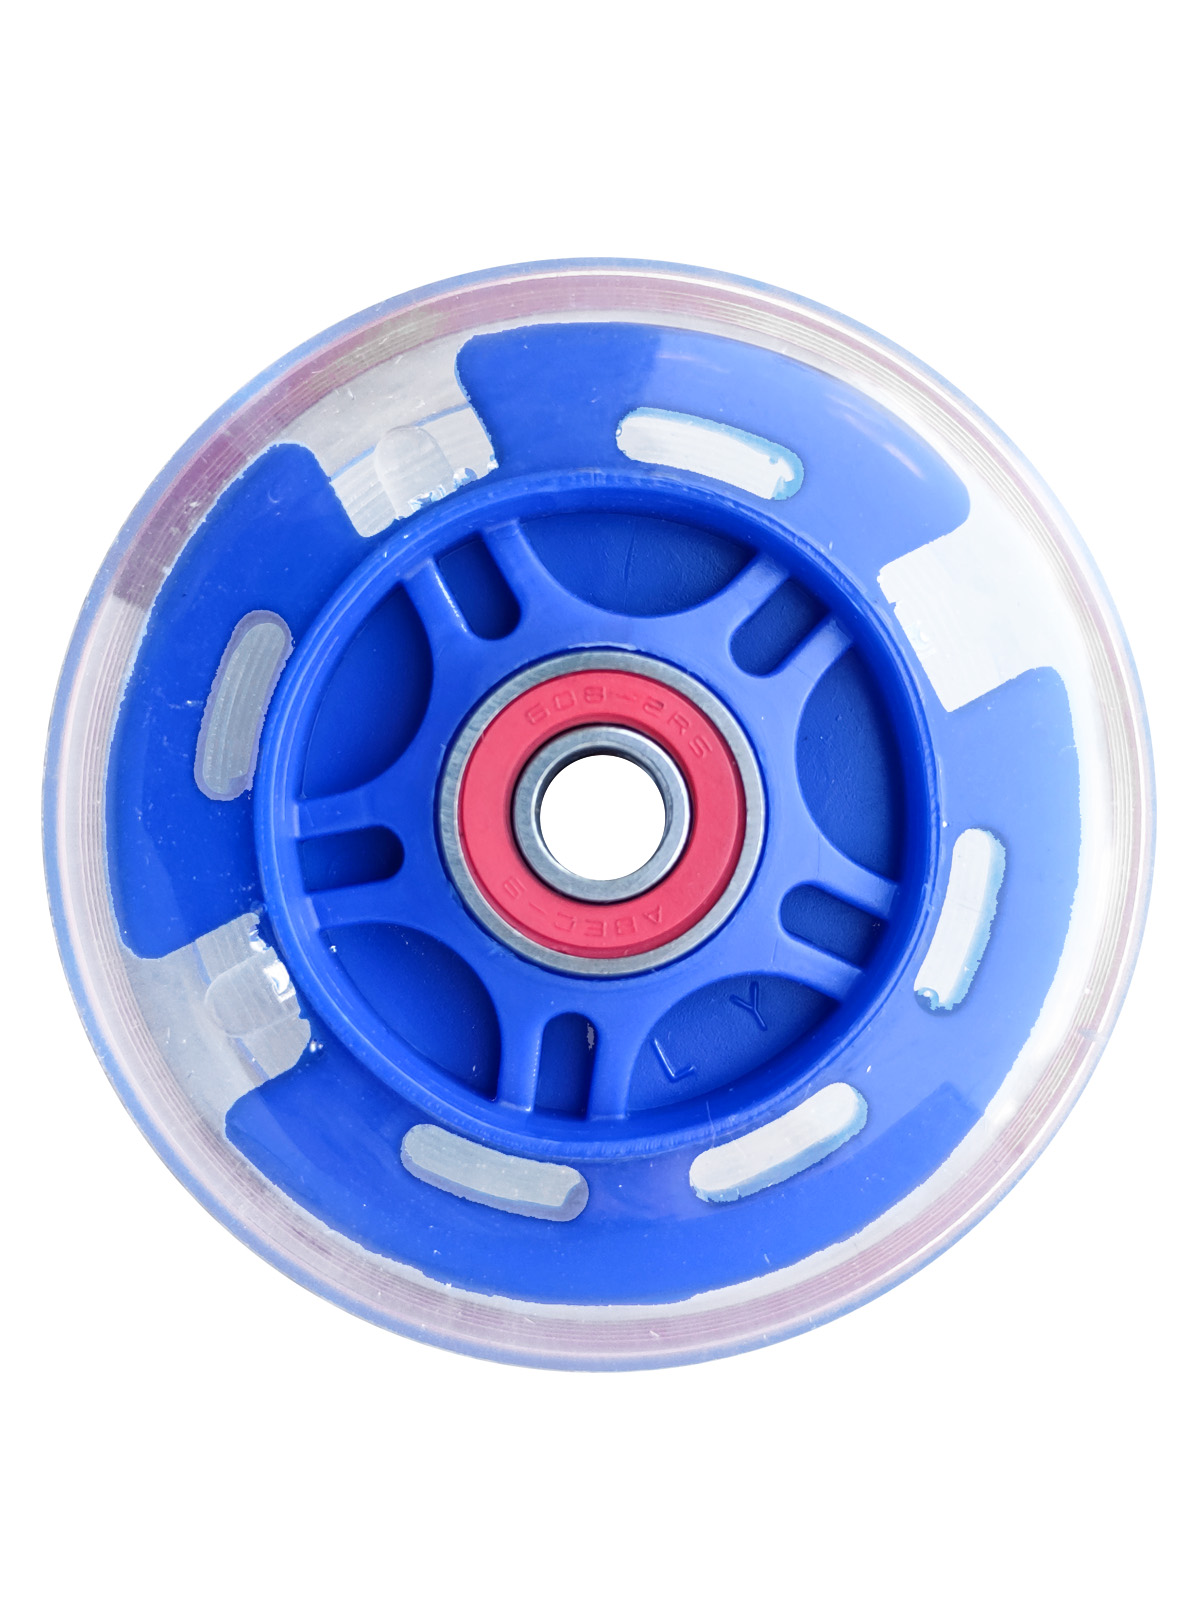 Заднее светящееся колесо для детской самоката Sportsbaby 78-80 мм синий